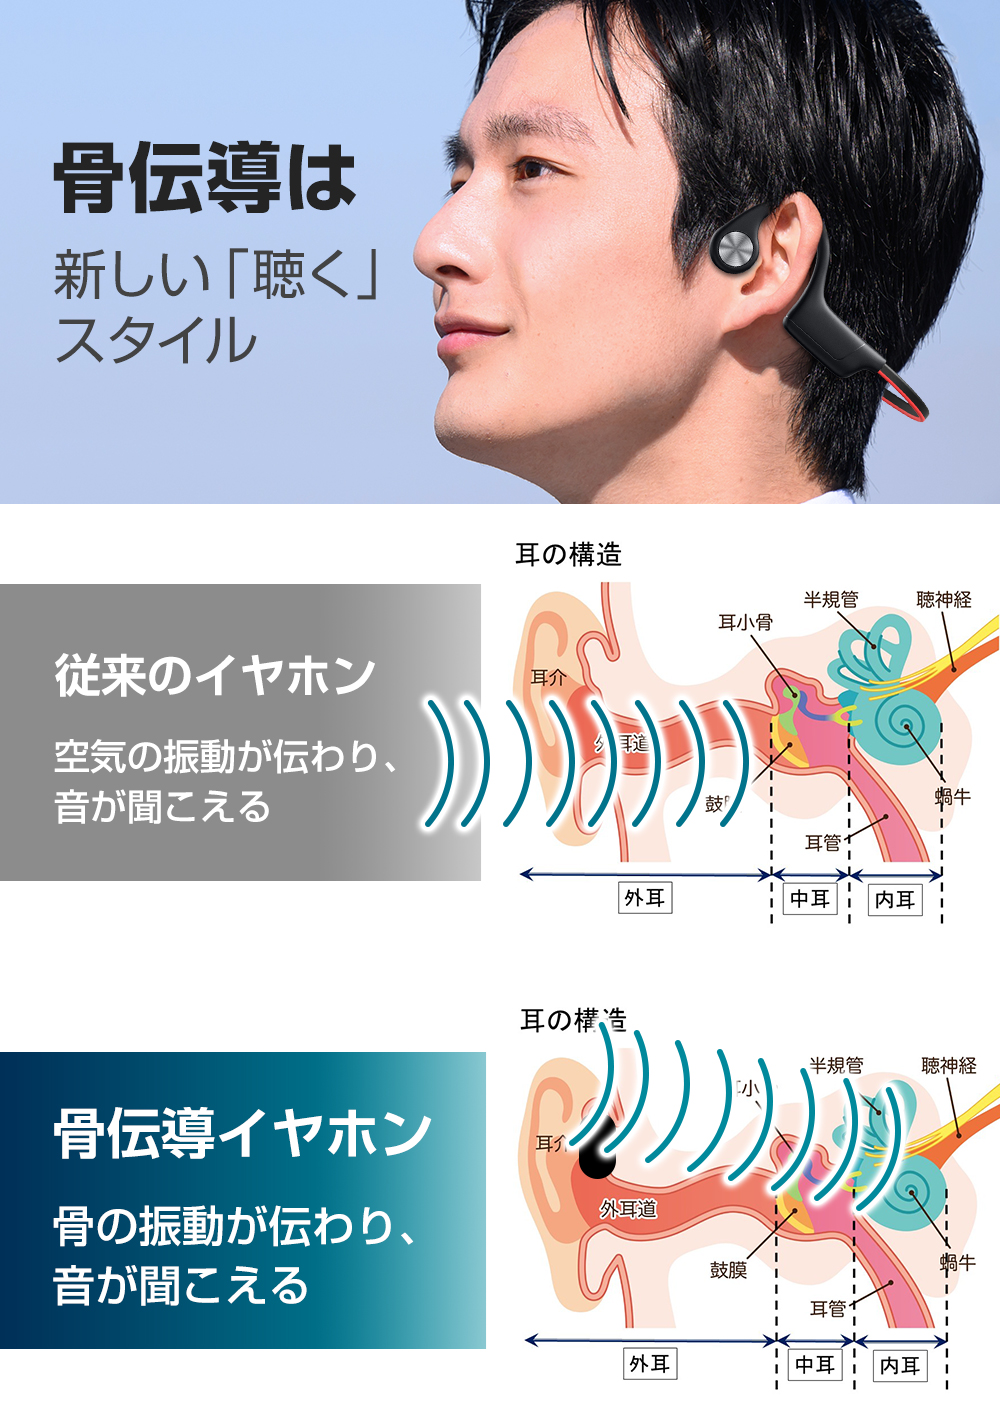 骨伝導イヤホン Bluetooth 5.3 ワイヤレスイヤホン マイク付き ヘッドホン 10H連続再生 耳掛け式 自動ペアリング 両耳通話 超軽量  IPX6防水 iPhone/Android対応 ej-g20 KuKuYa 通販 